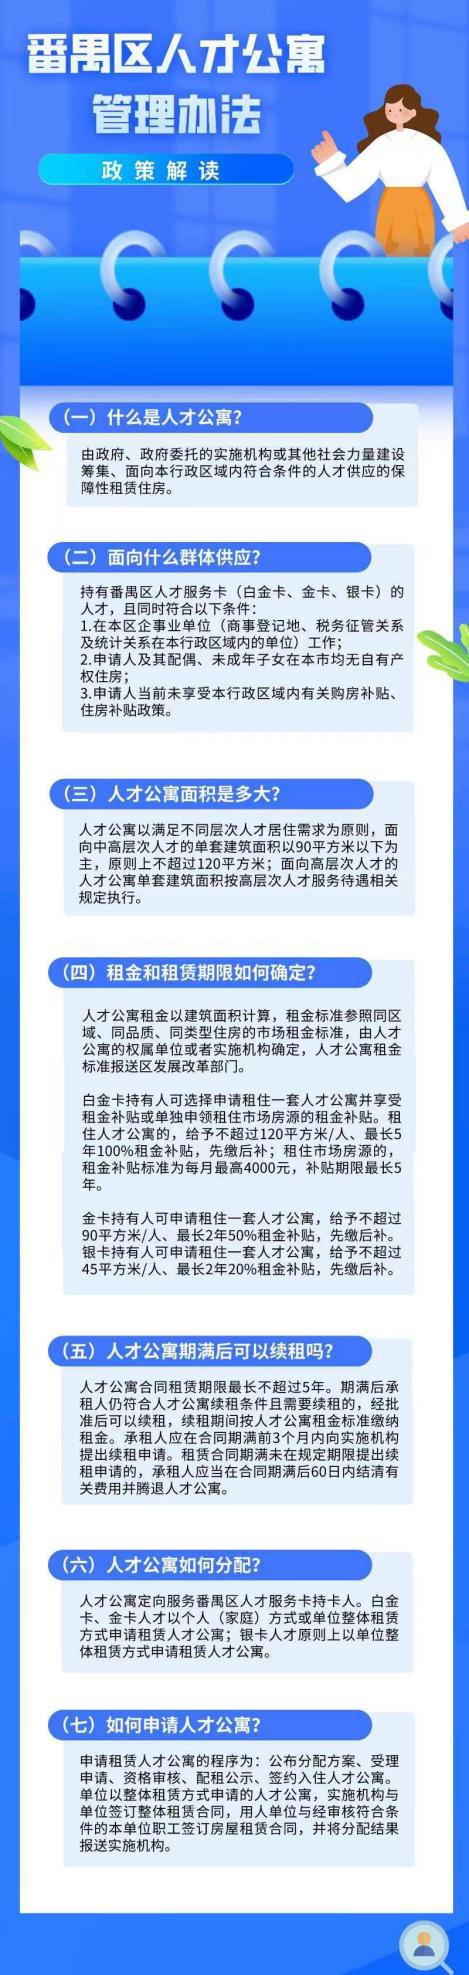 《广州市番禺区人才公寓管理办法》的解读.png